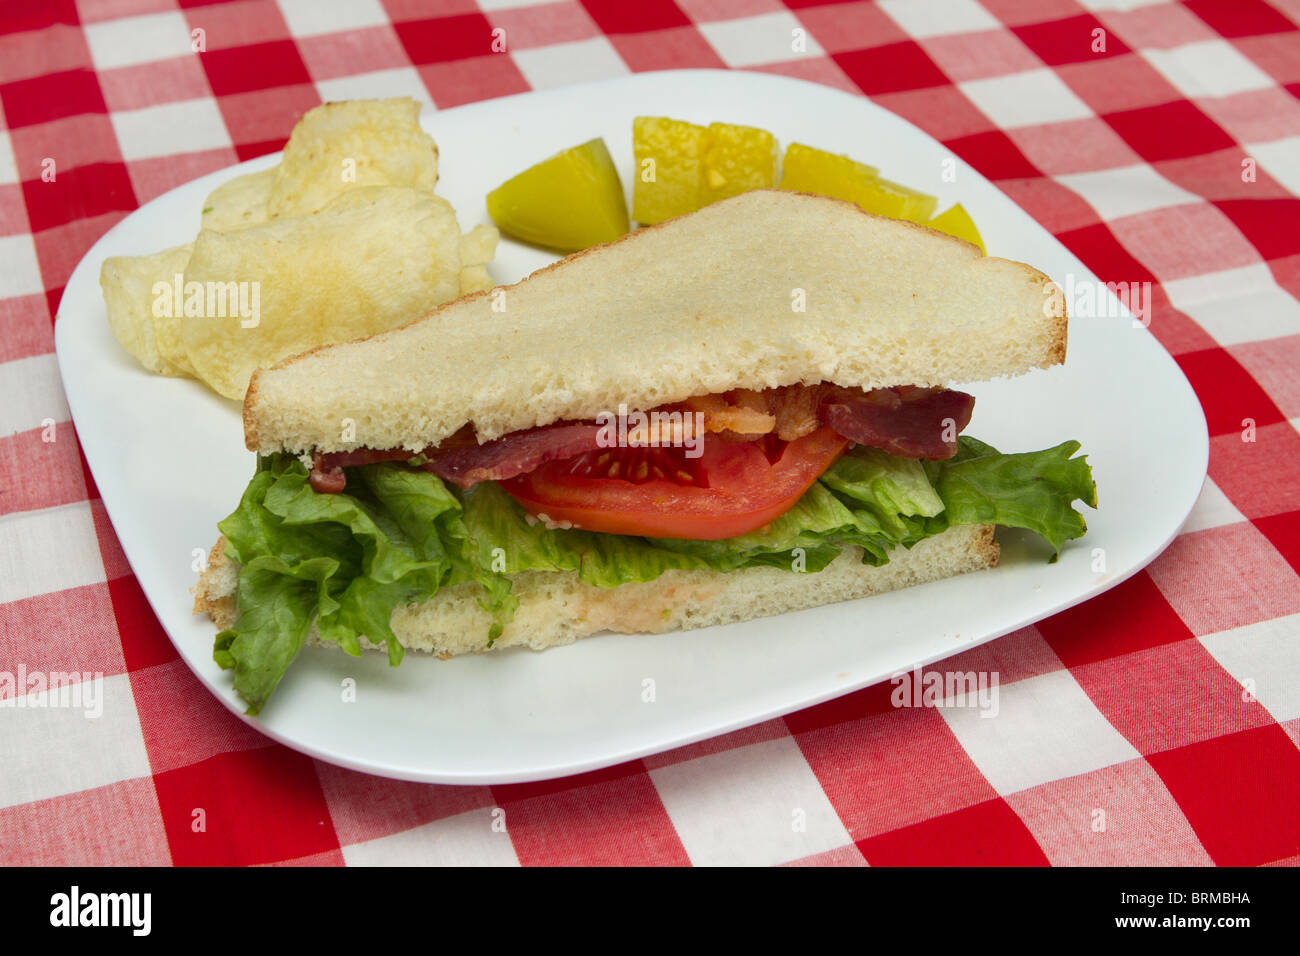 La metà di un sandwich blt su una piastra bianca con chip e sottaceti Foto Stock